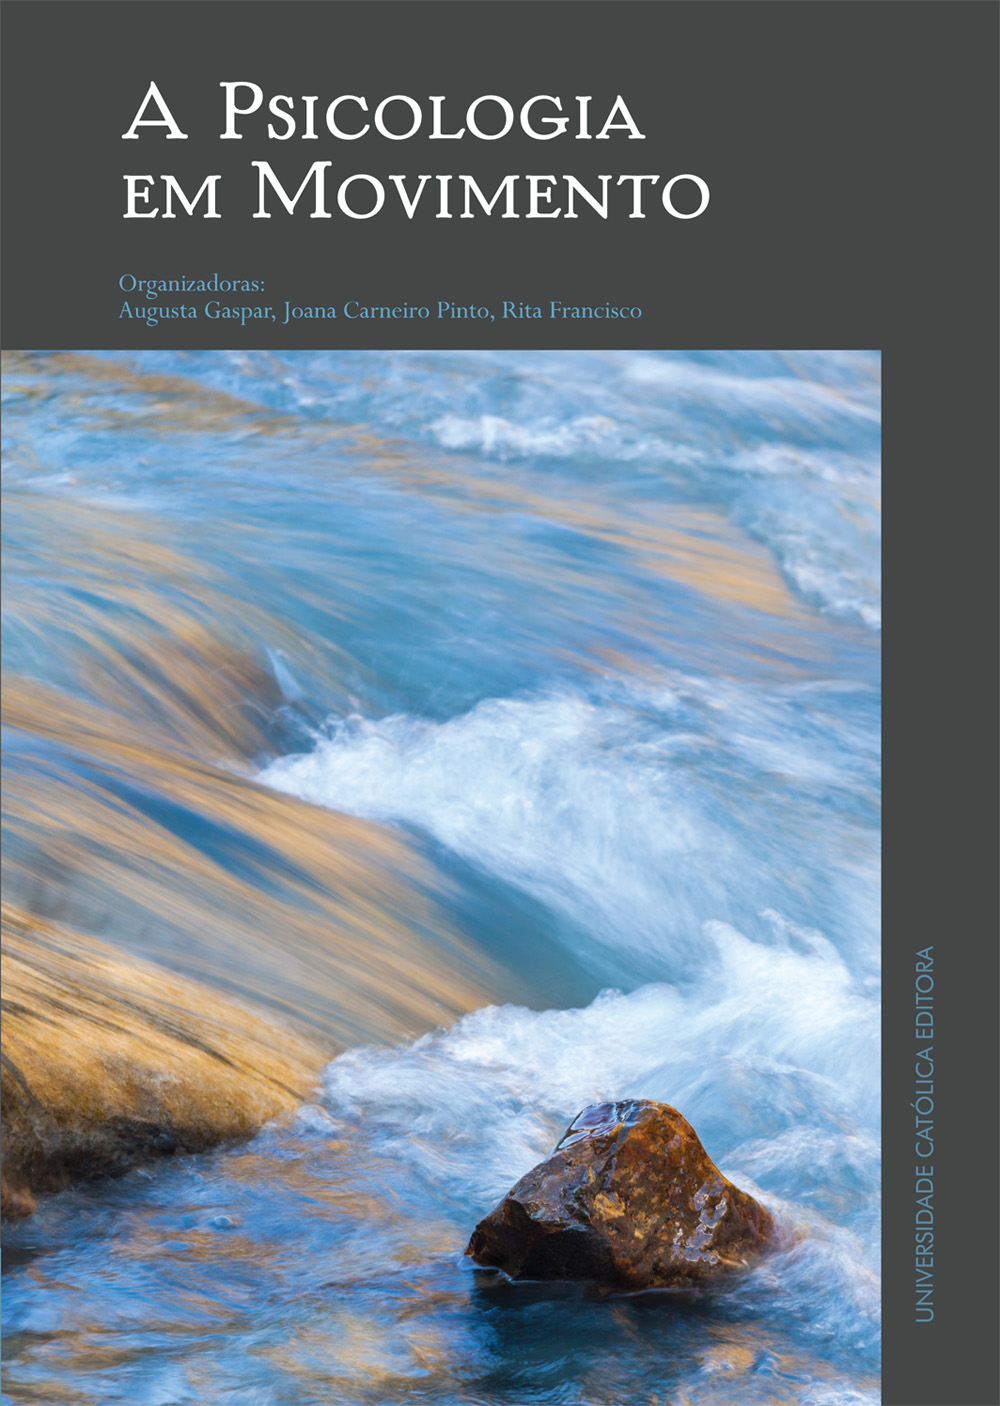 A PSICOLOGIA EM MOVIMENTO - Livro em Homenagem à Professora Helena Rebelo Pinto